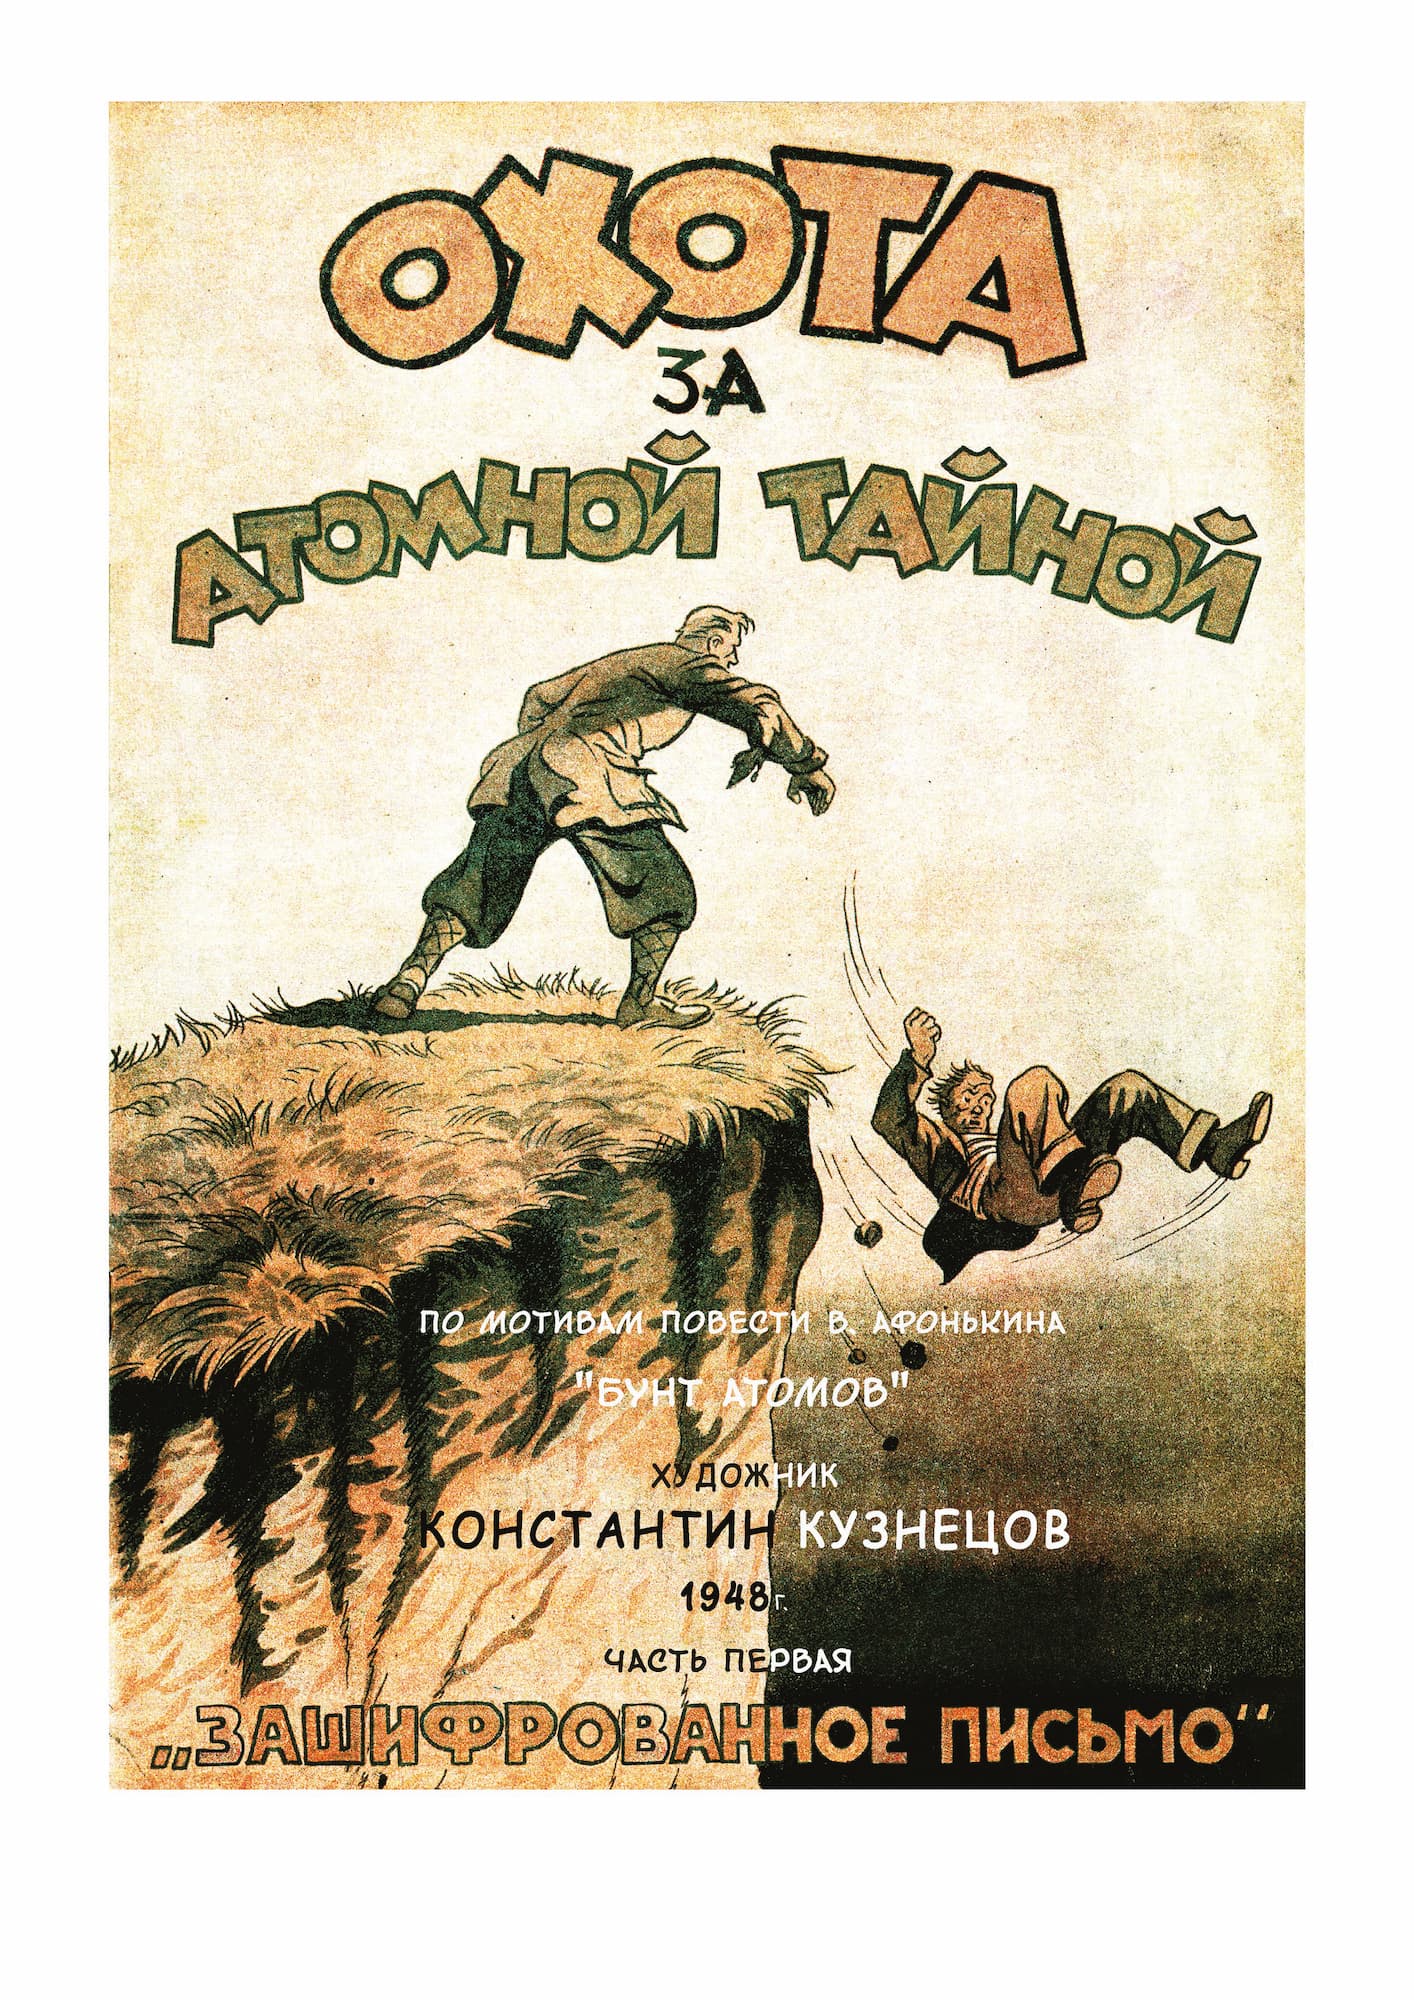 Русский комикс 1935-1945 Королевство Югославия